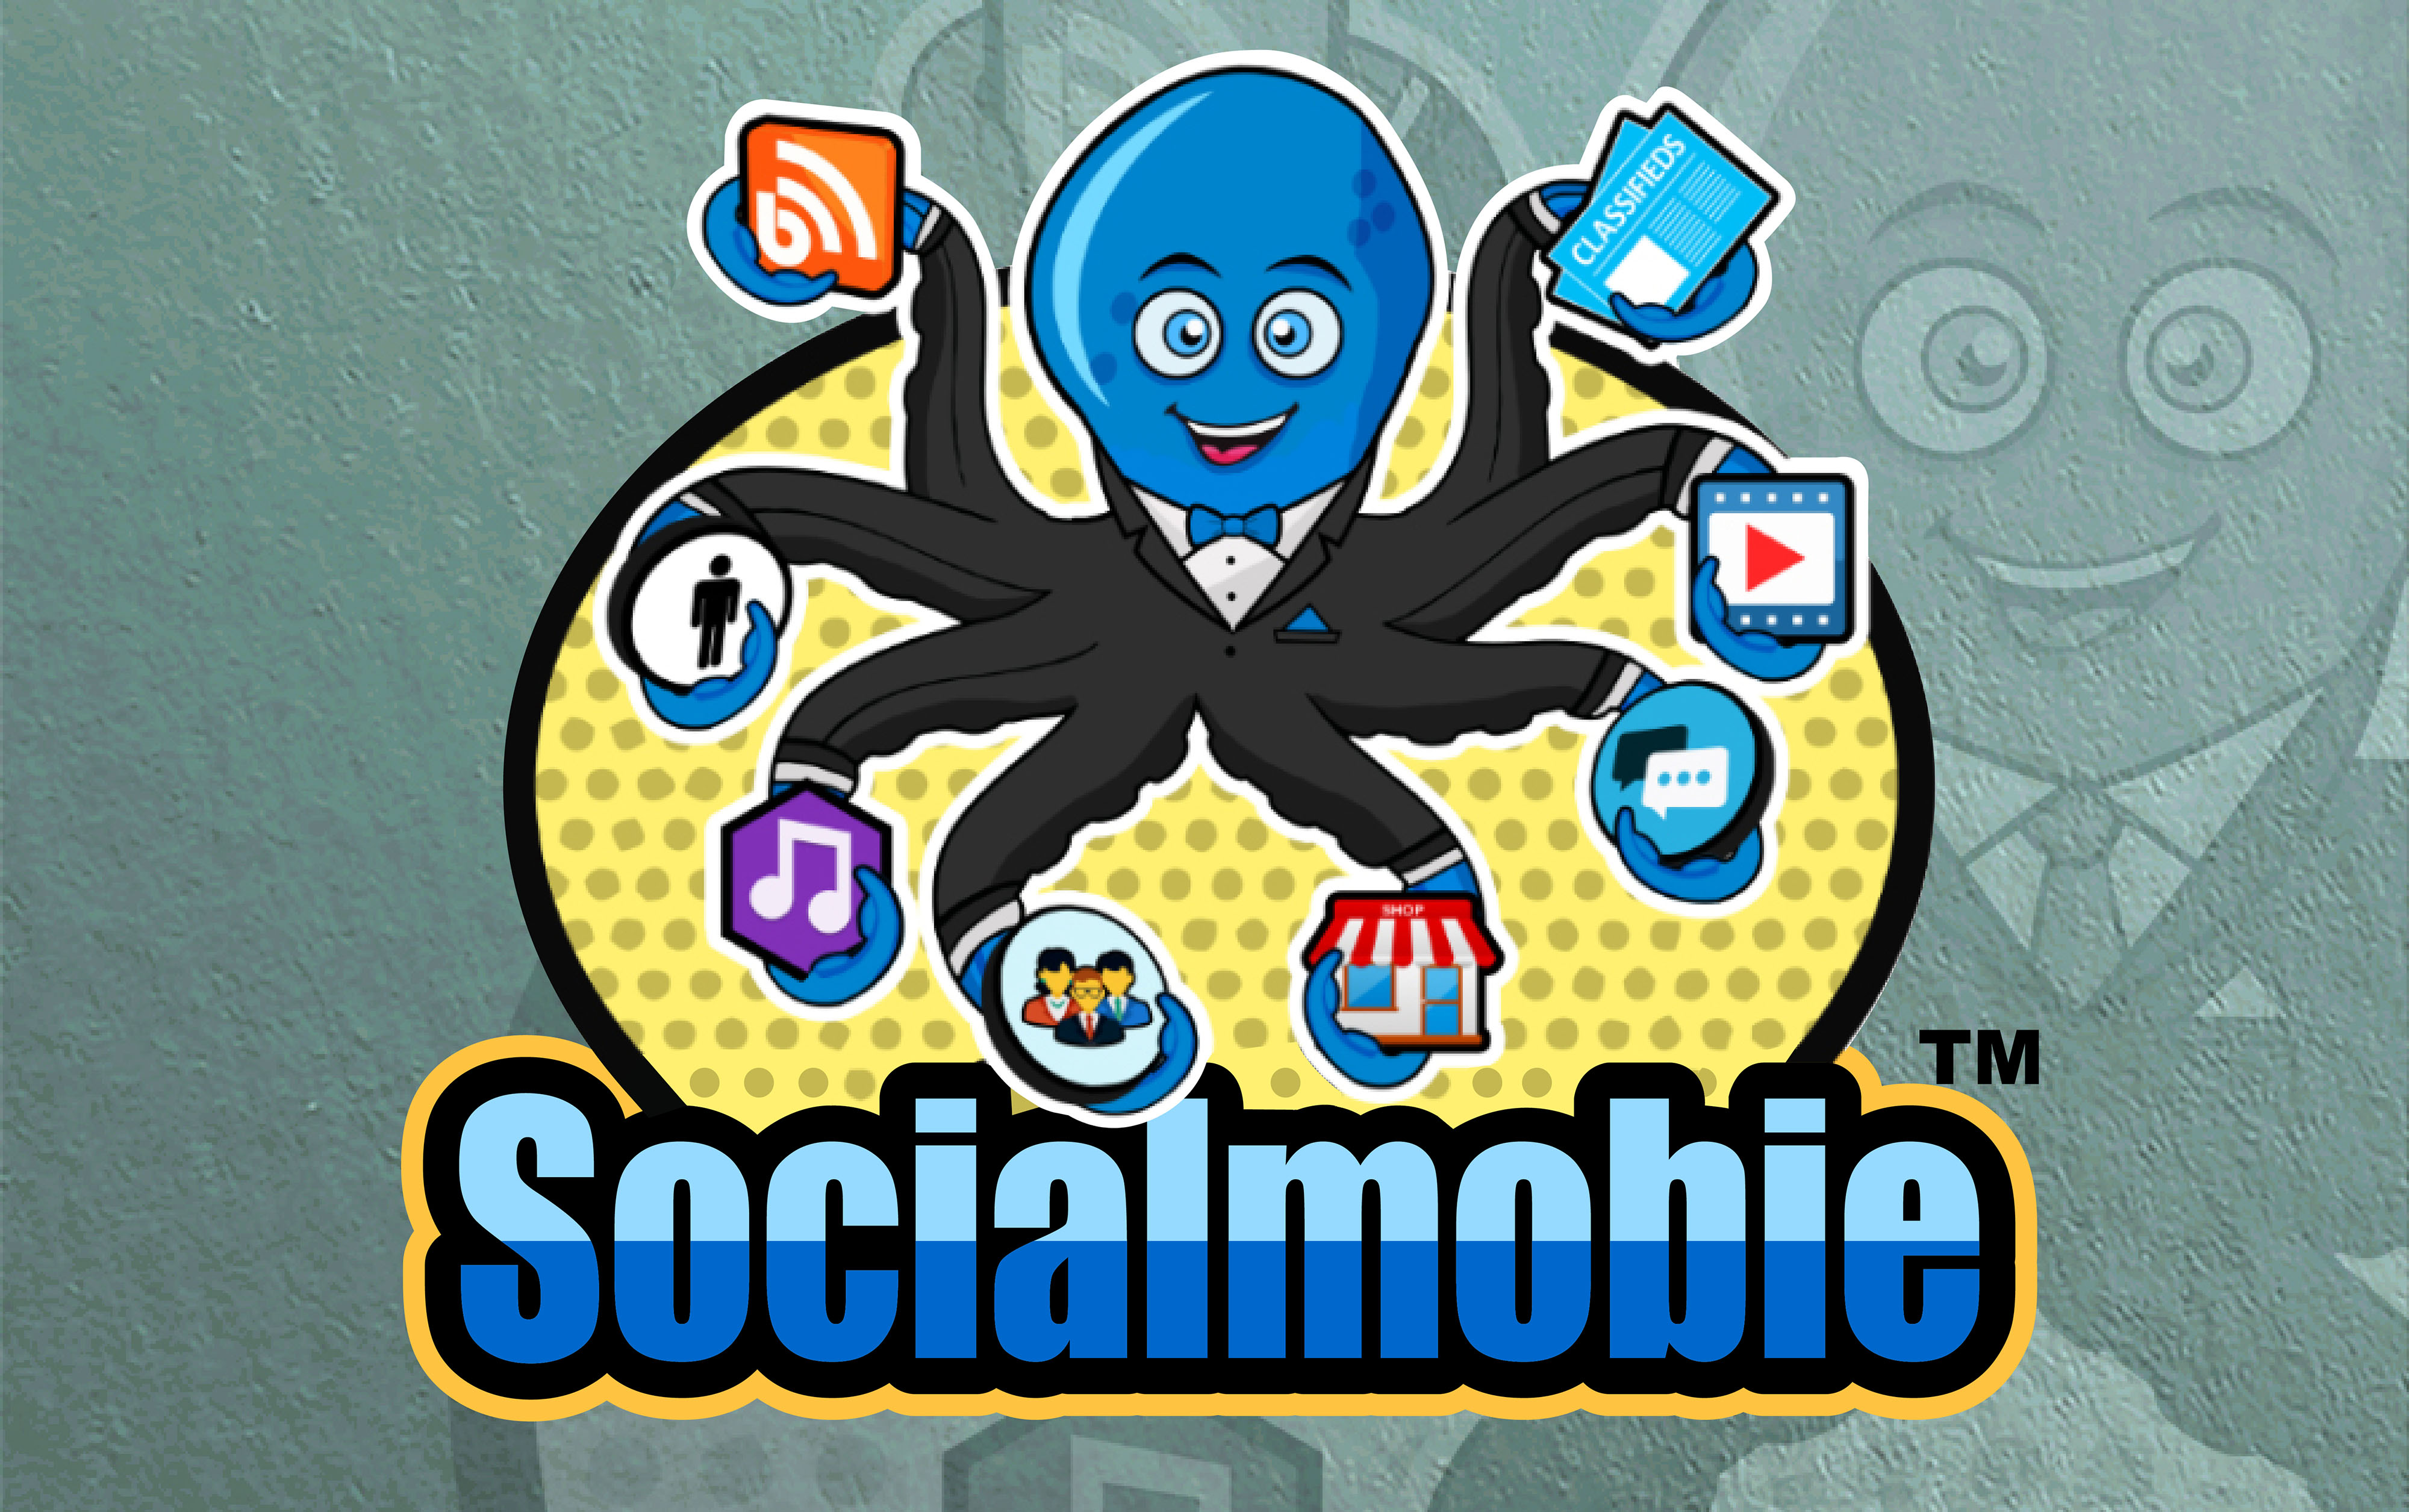 Socialmobie.com